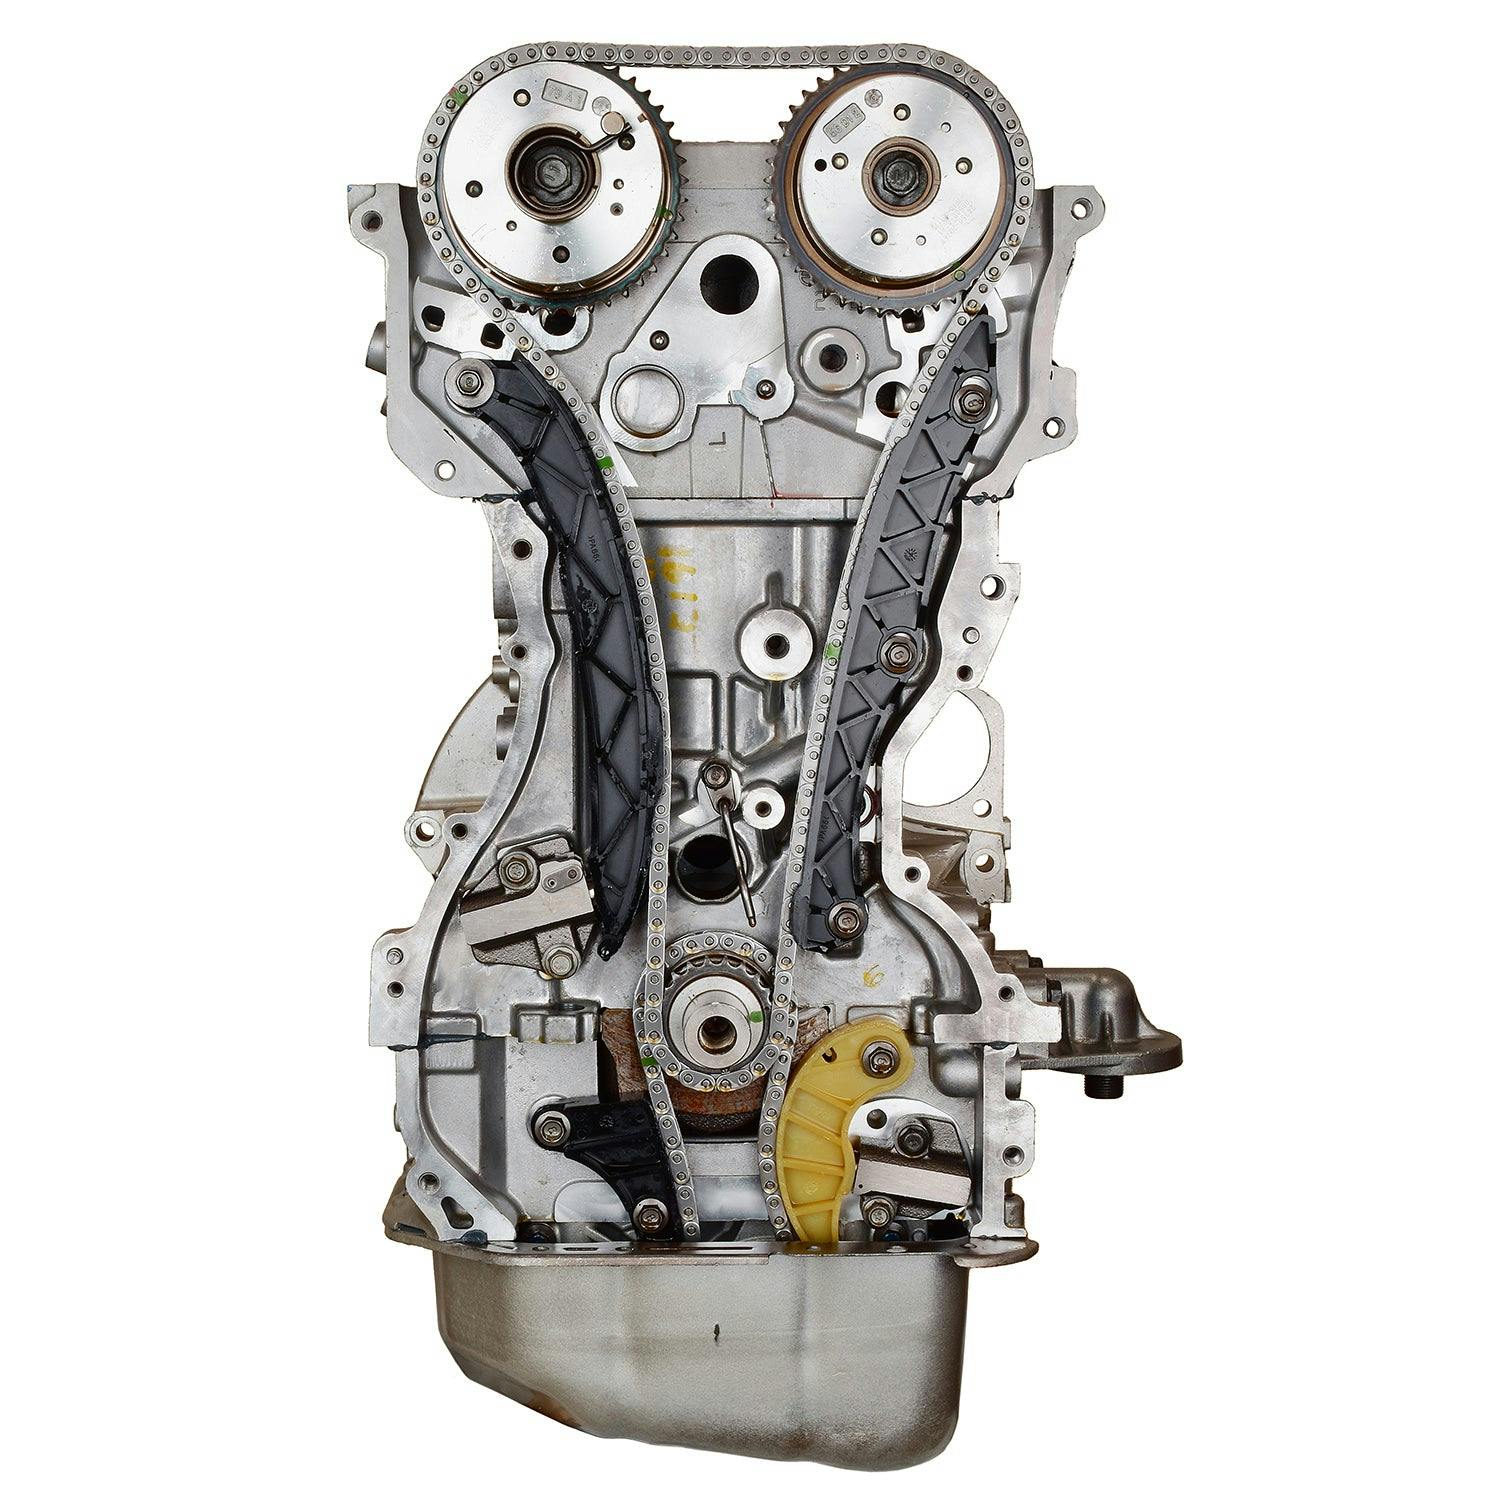 2.4L Inline-4 Engine for 2012-2016 Hyundai Santa Fe Sport, Tucson/Kia Sorento, Sportage